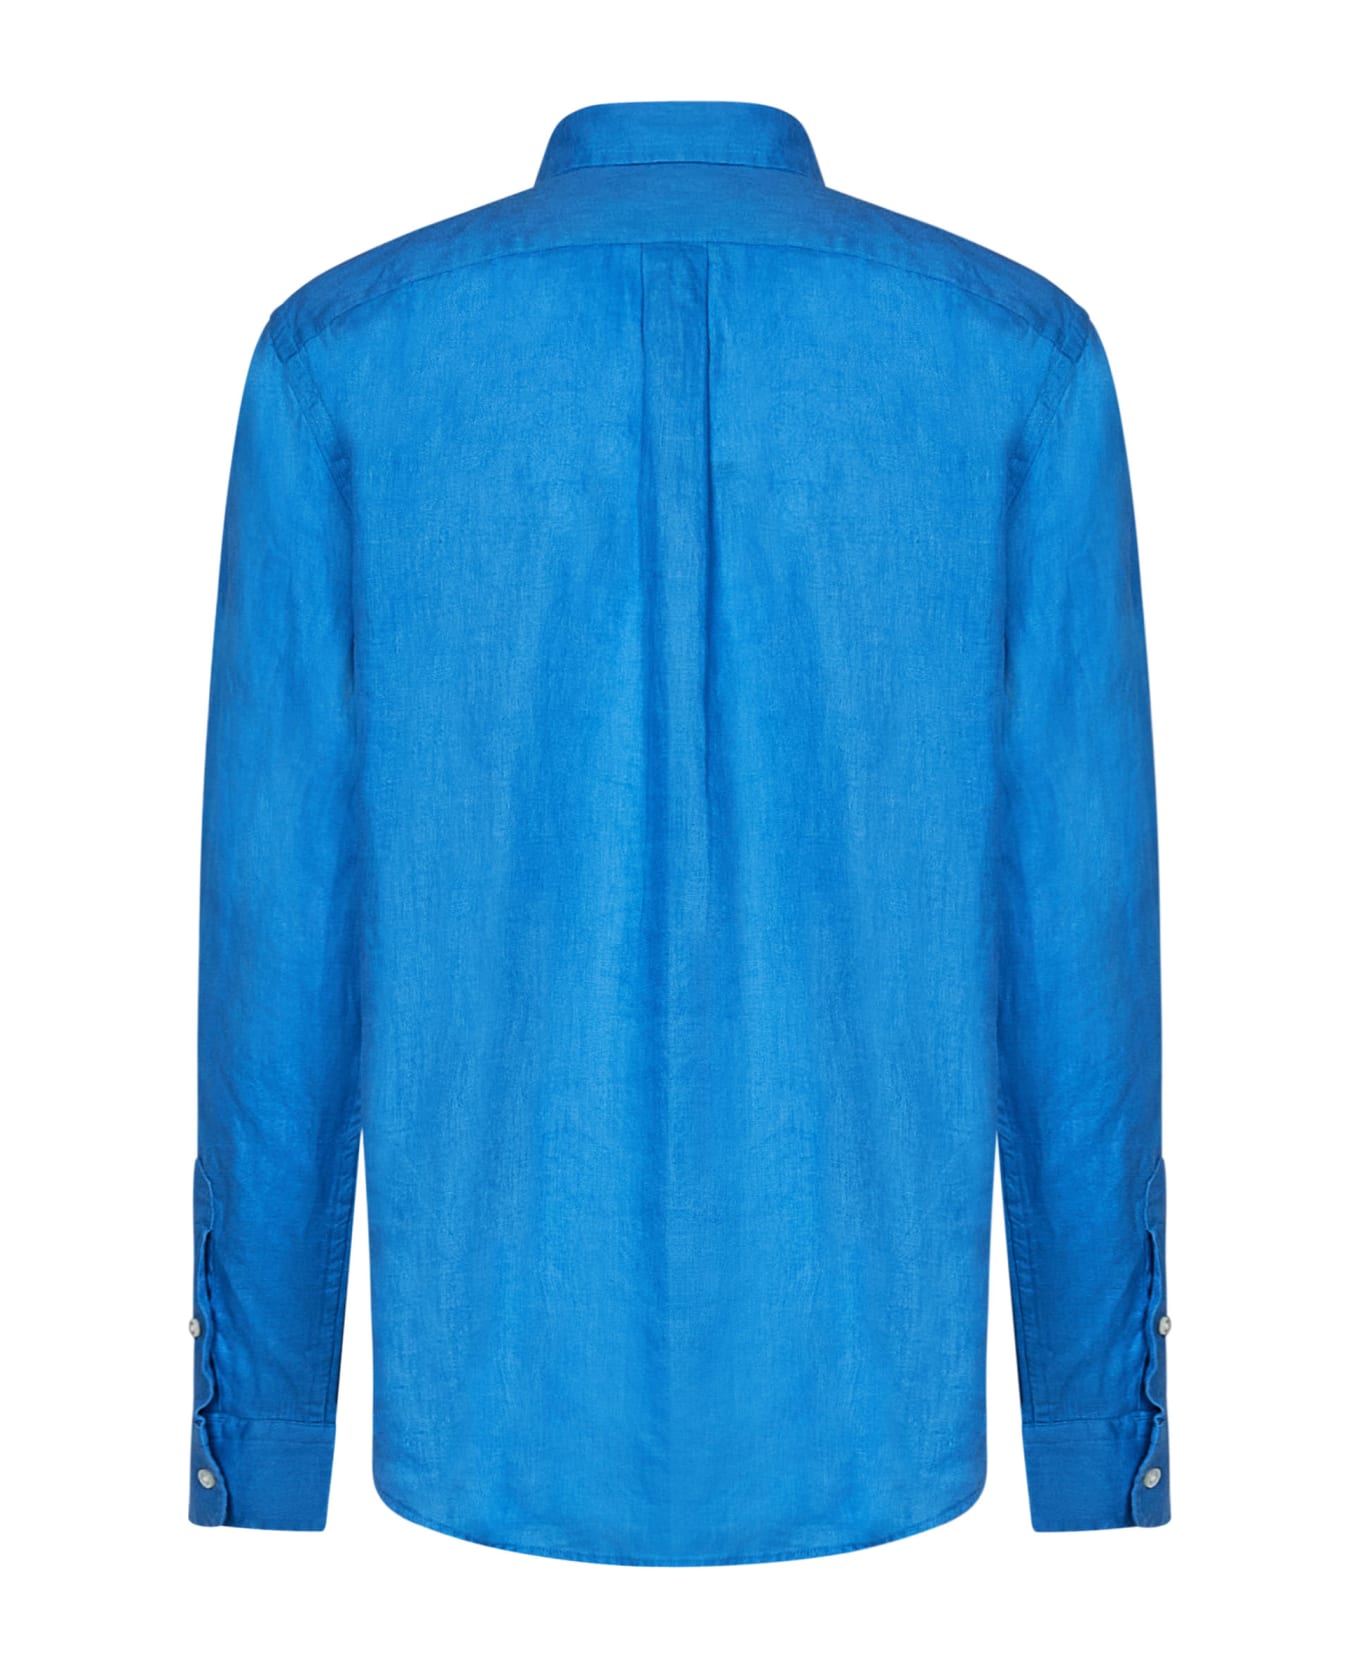 Polo Ralph Lauren Shirt - Riviera Blue